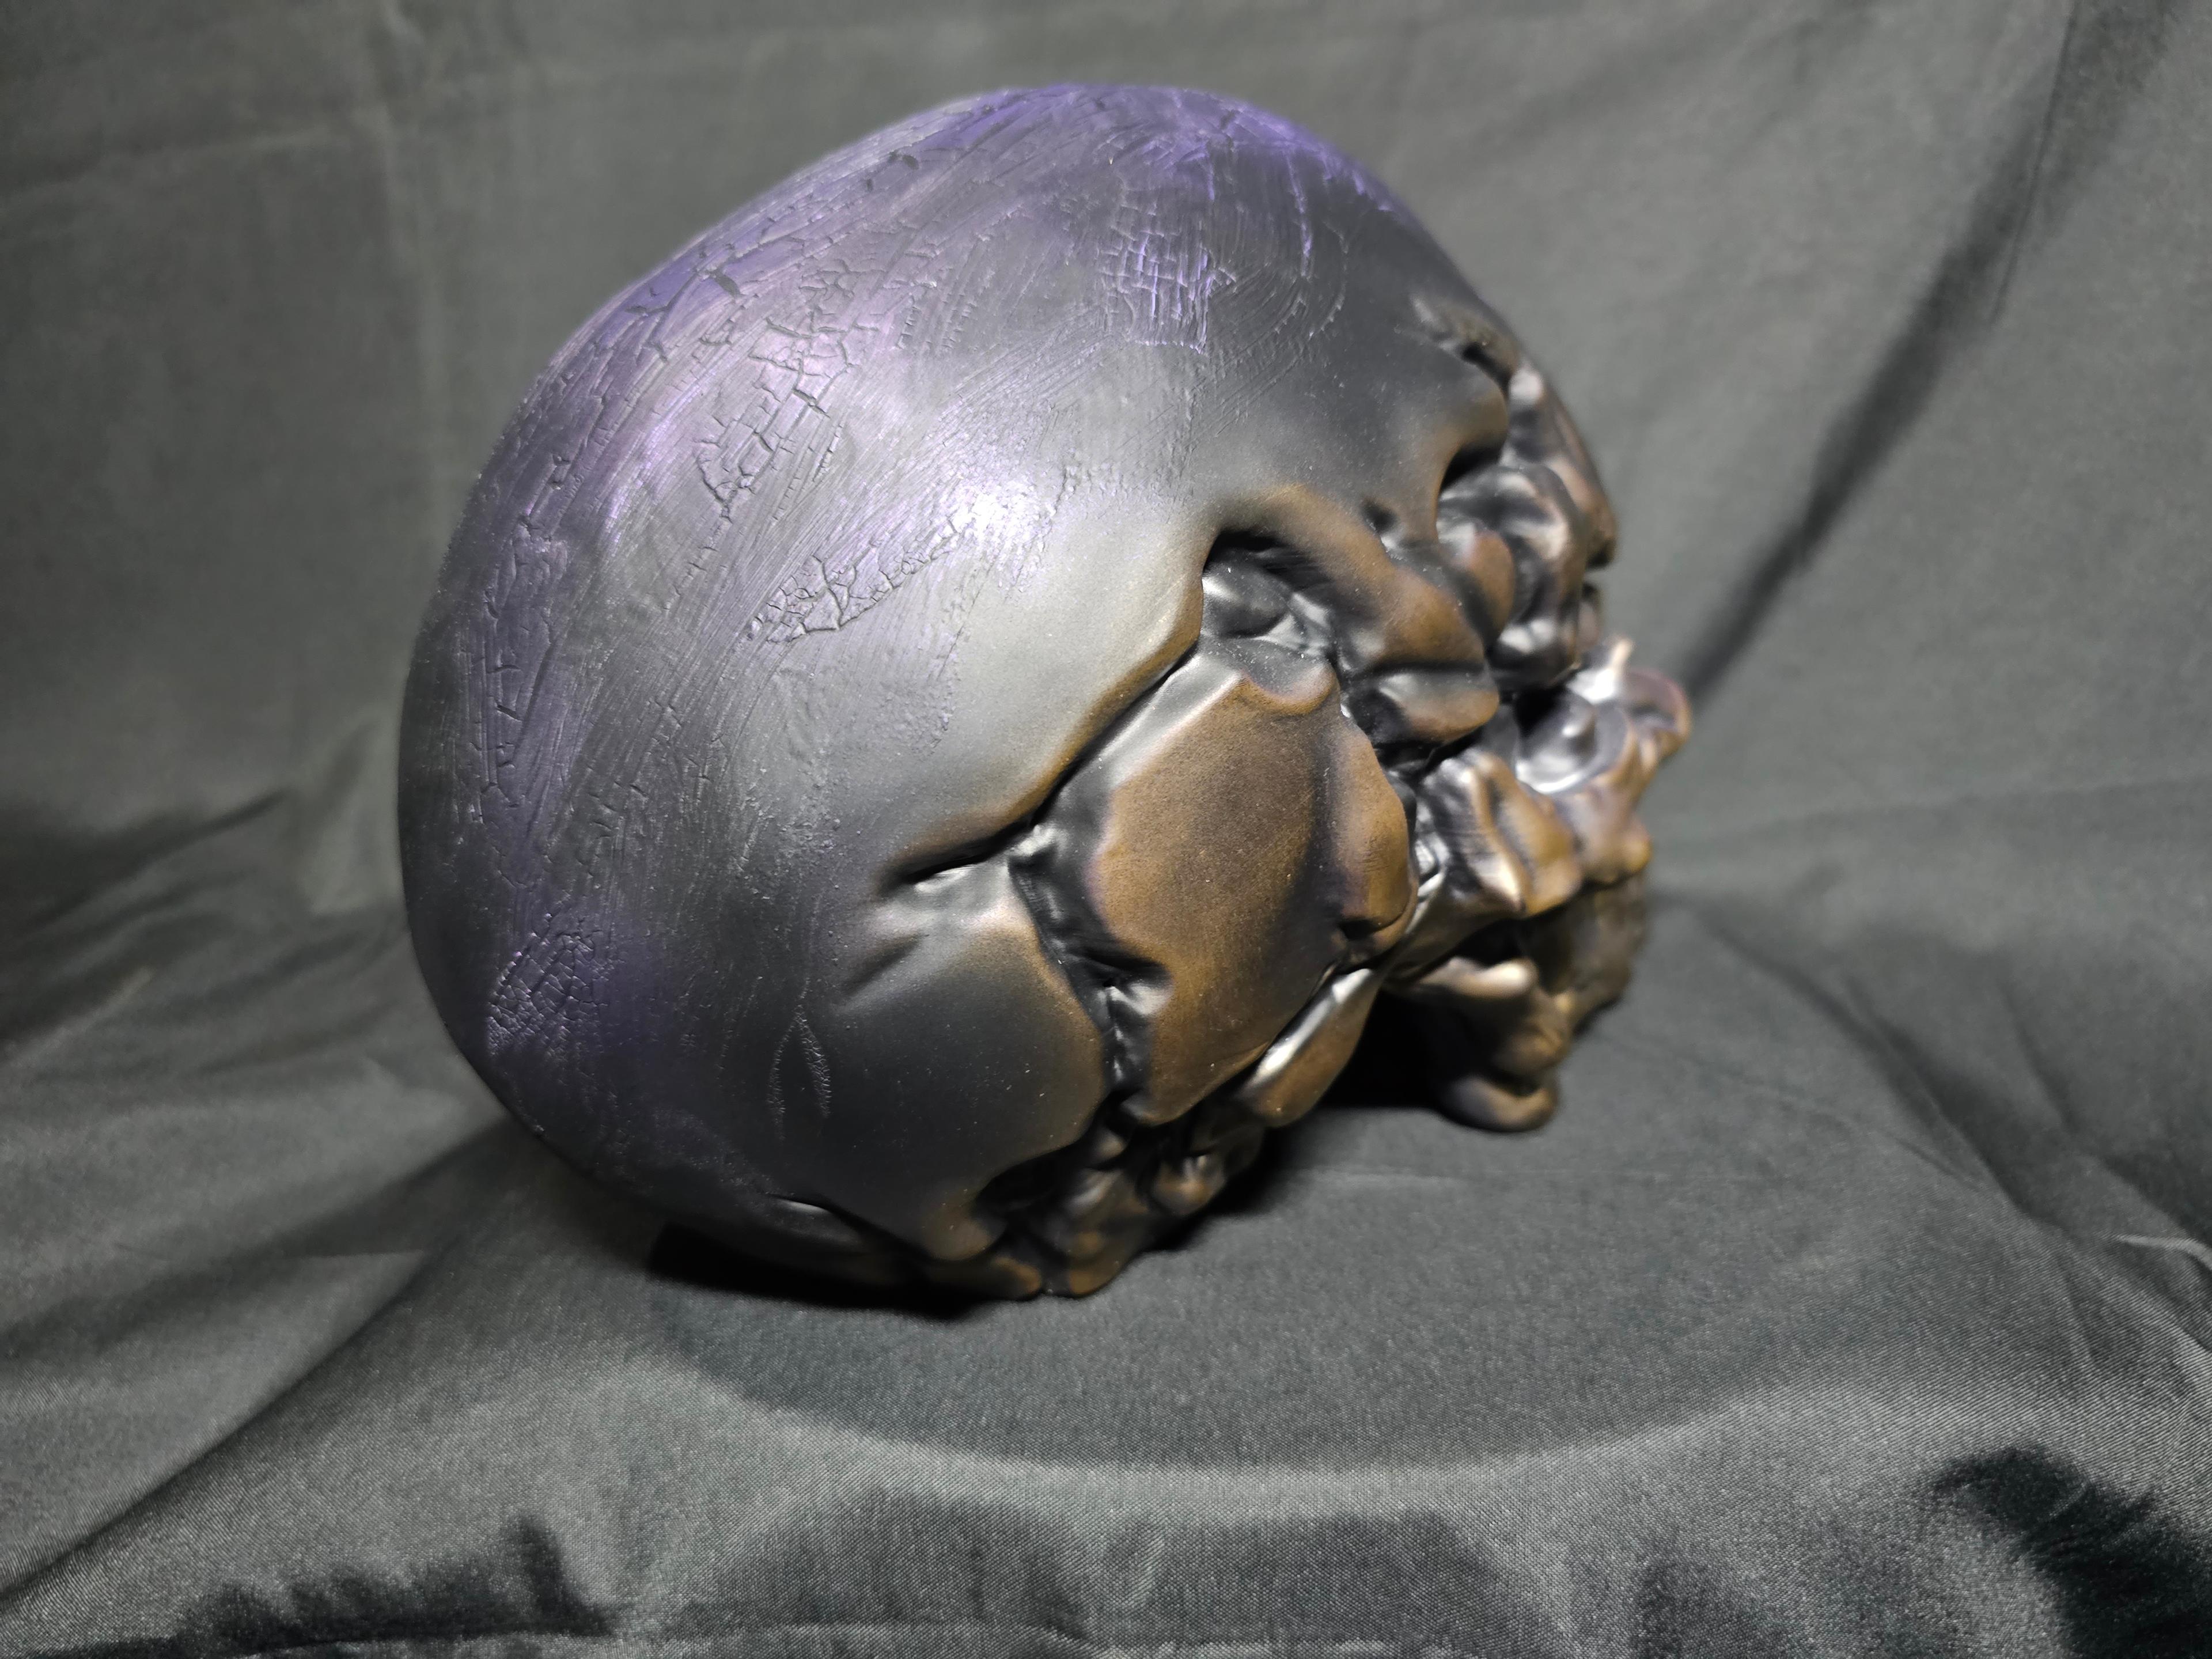 Blind Skull - Sculpture 3d model